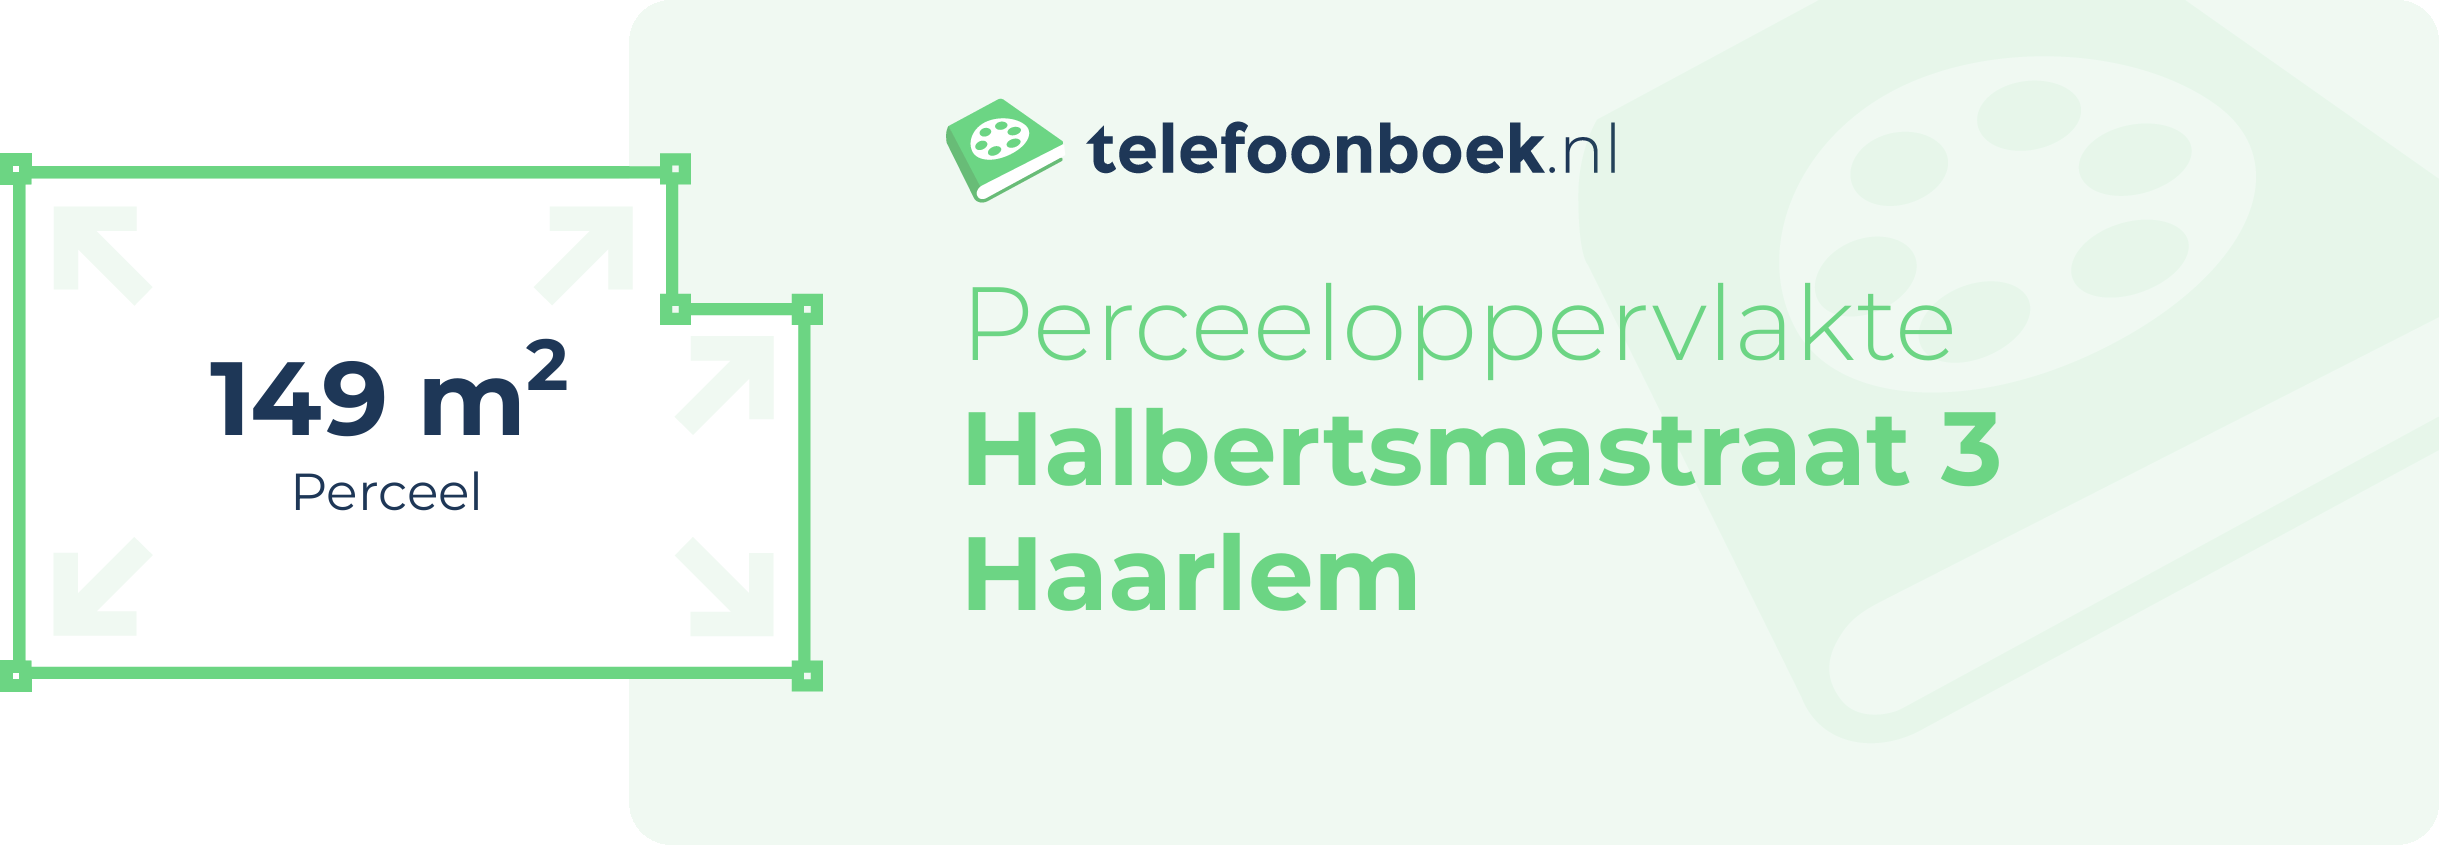 Perceeloppervlakte Halbertsmastraat 3 Haarlem